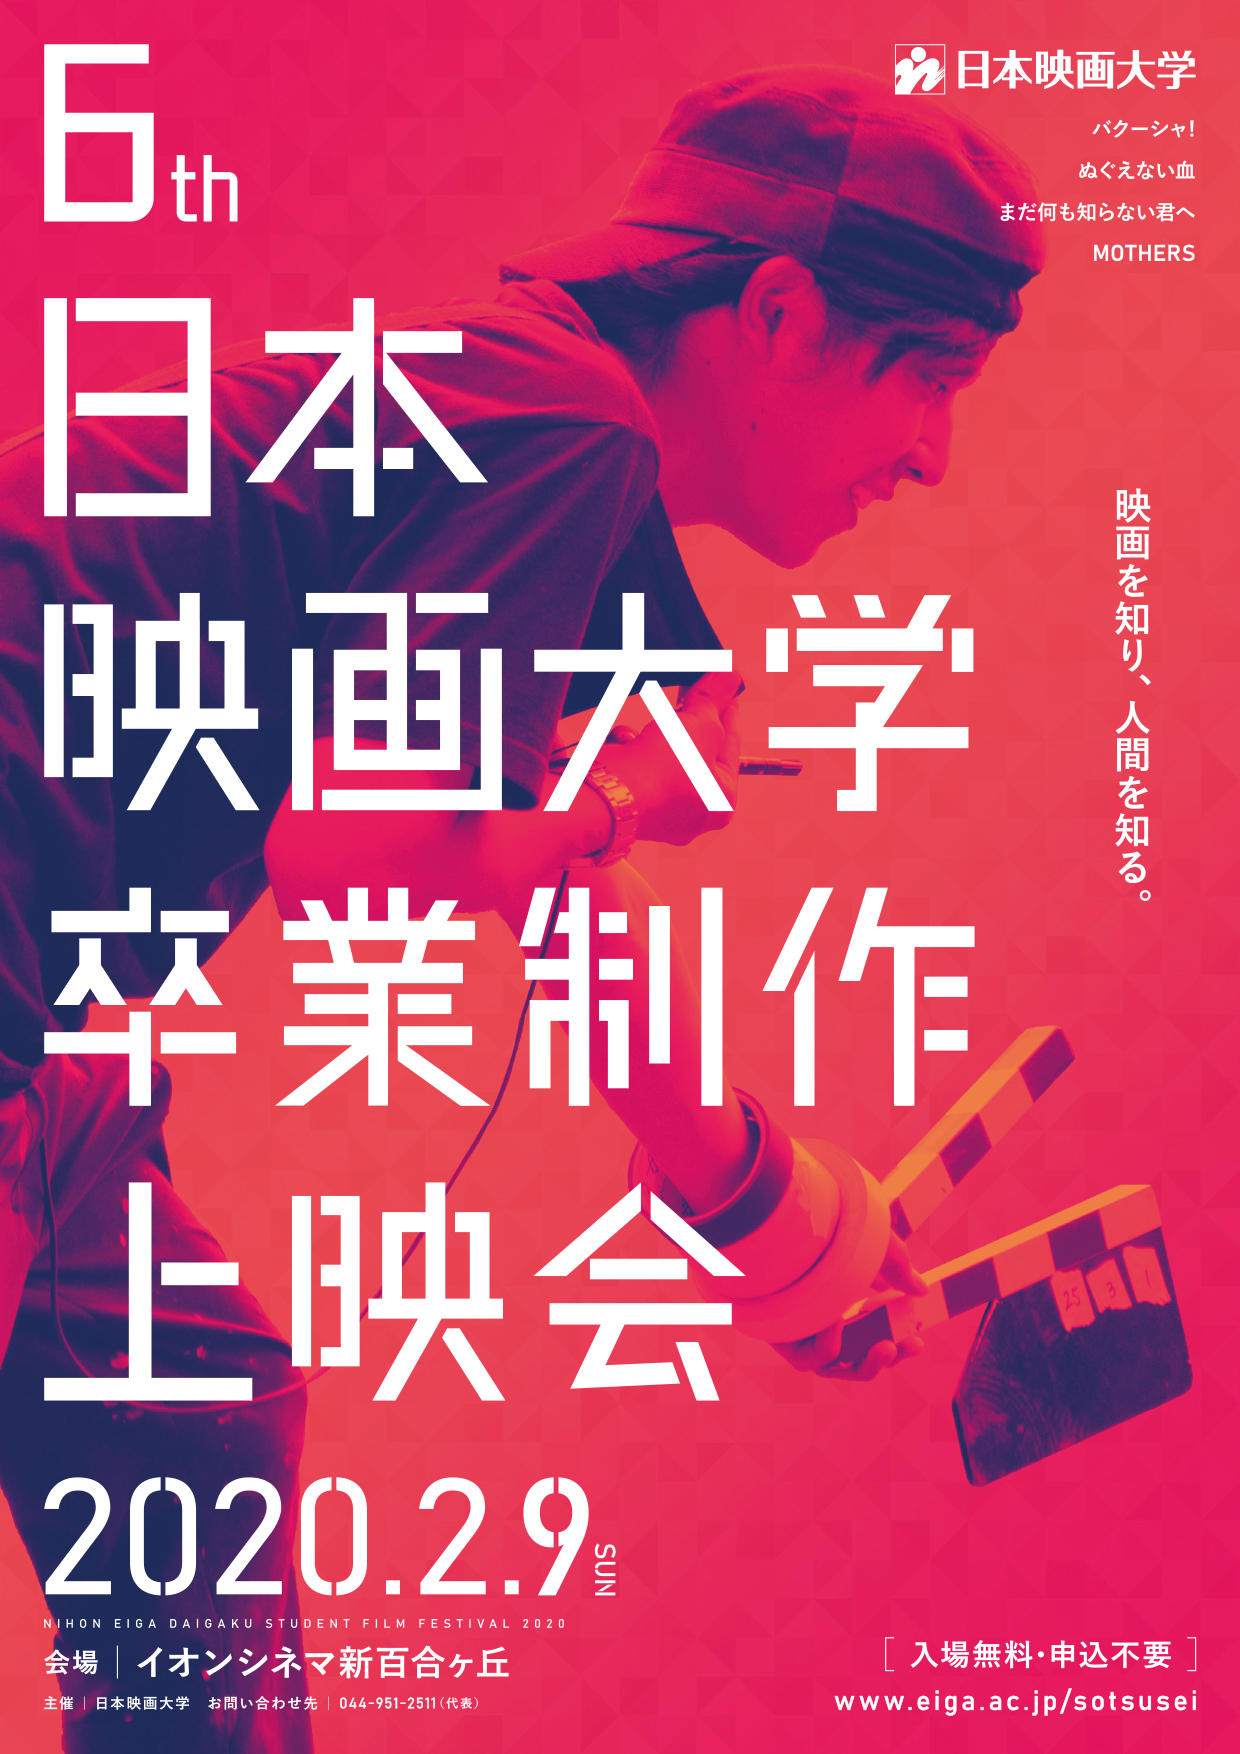 日本映画大学が来年2月9日に「第6回卒業制作上映会」を開催 -- イオンシネマ新百合ヶ丘でドラマ2作品・ドキュメンタリー2作品を一般公開